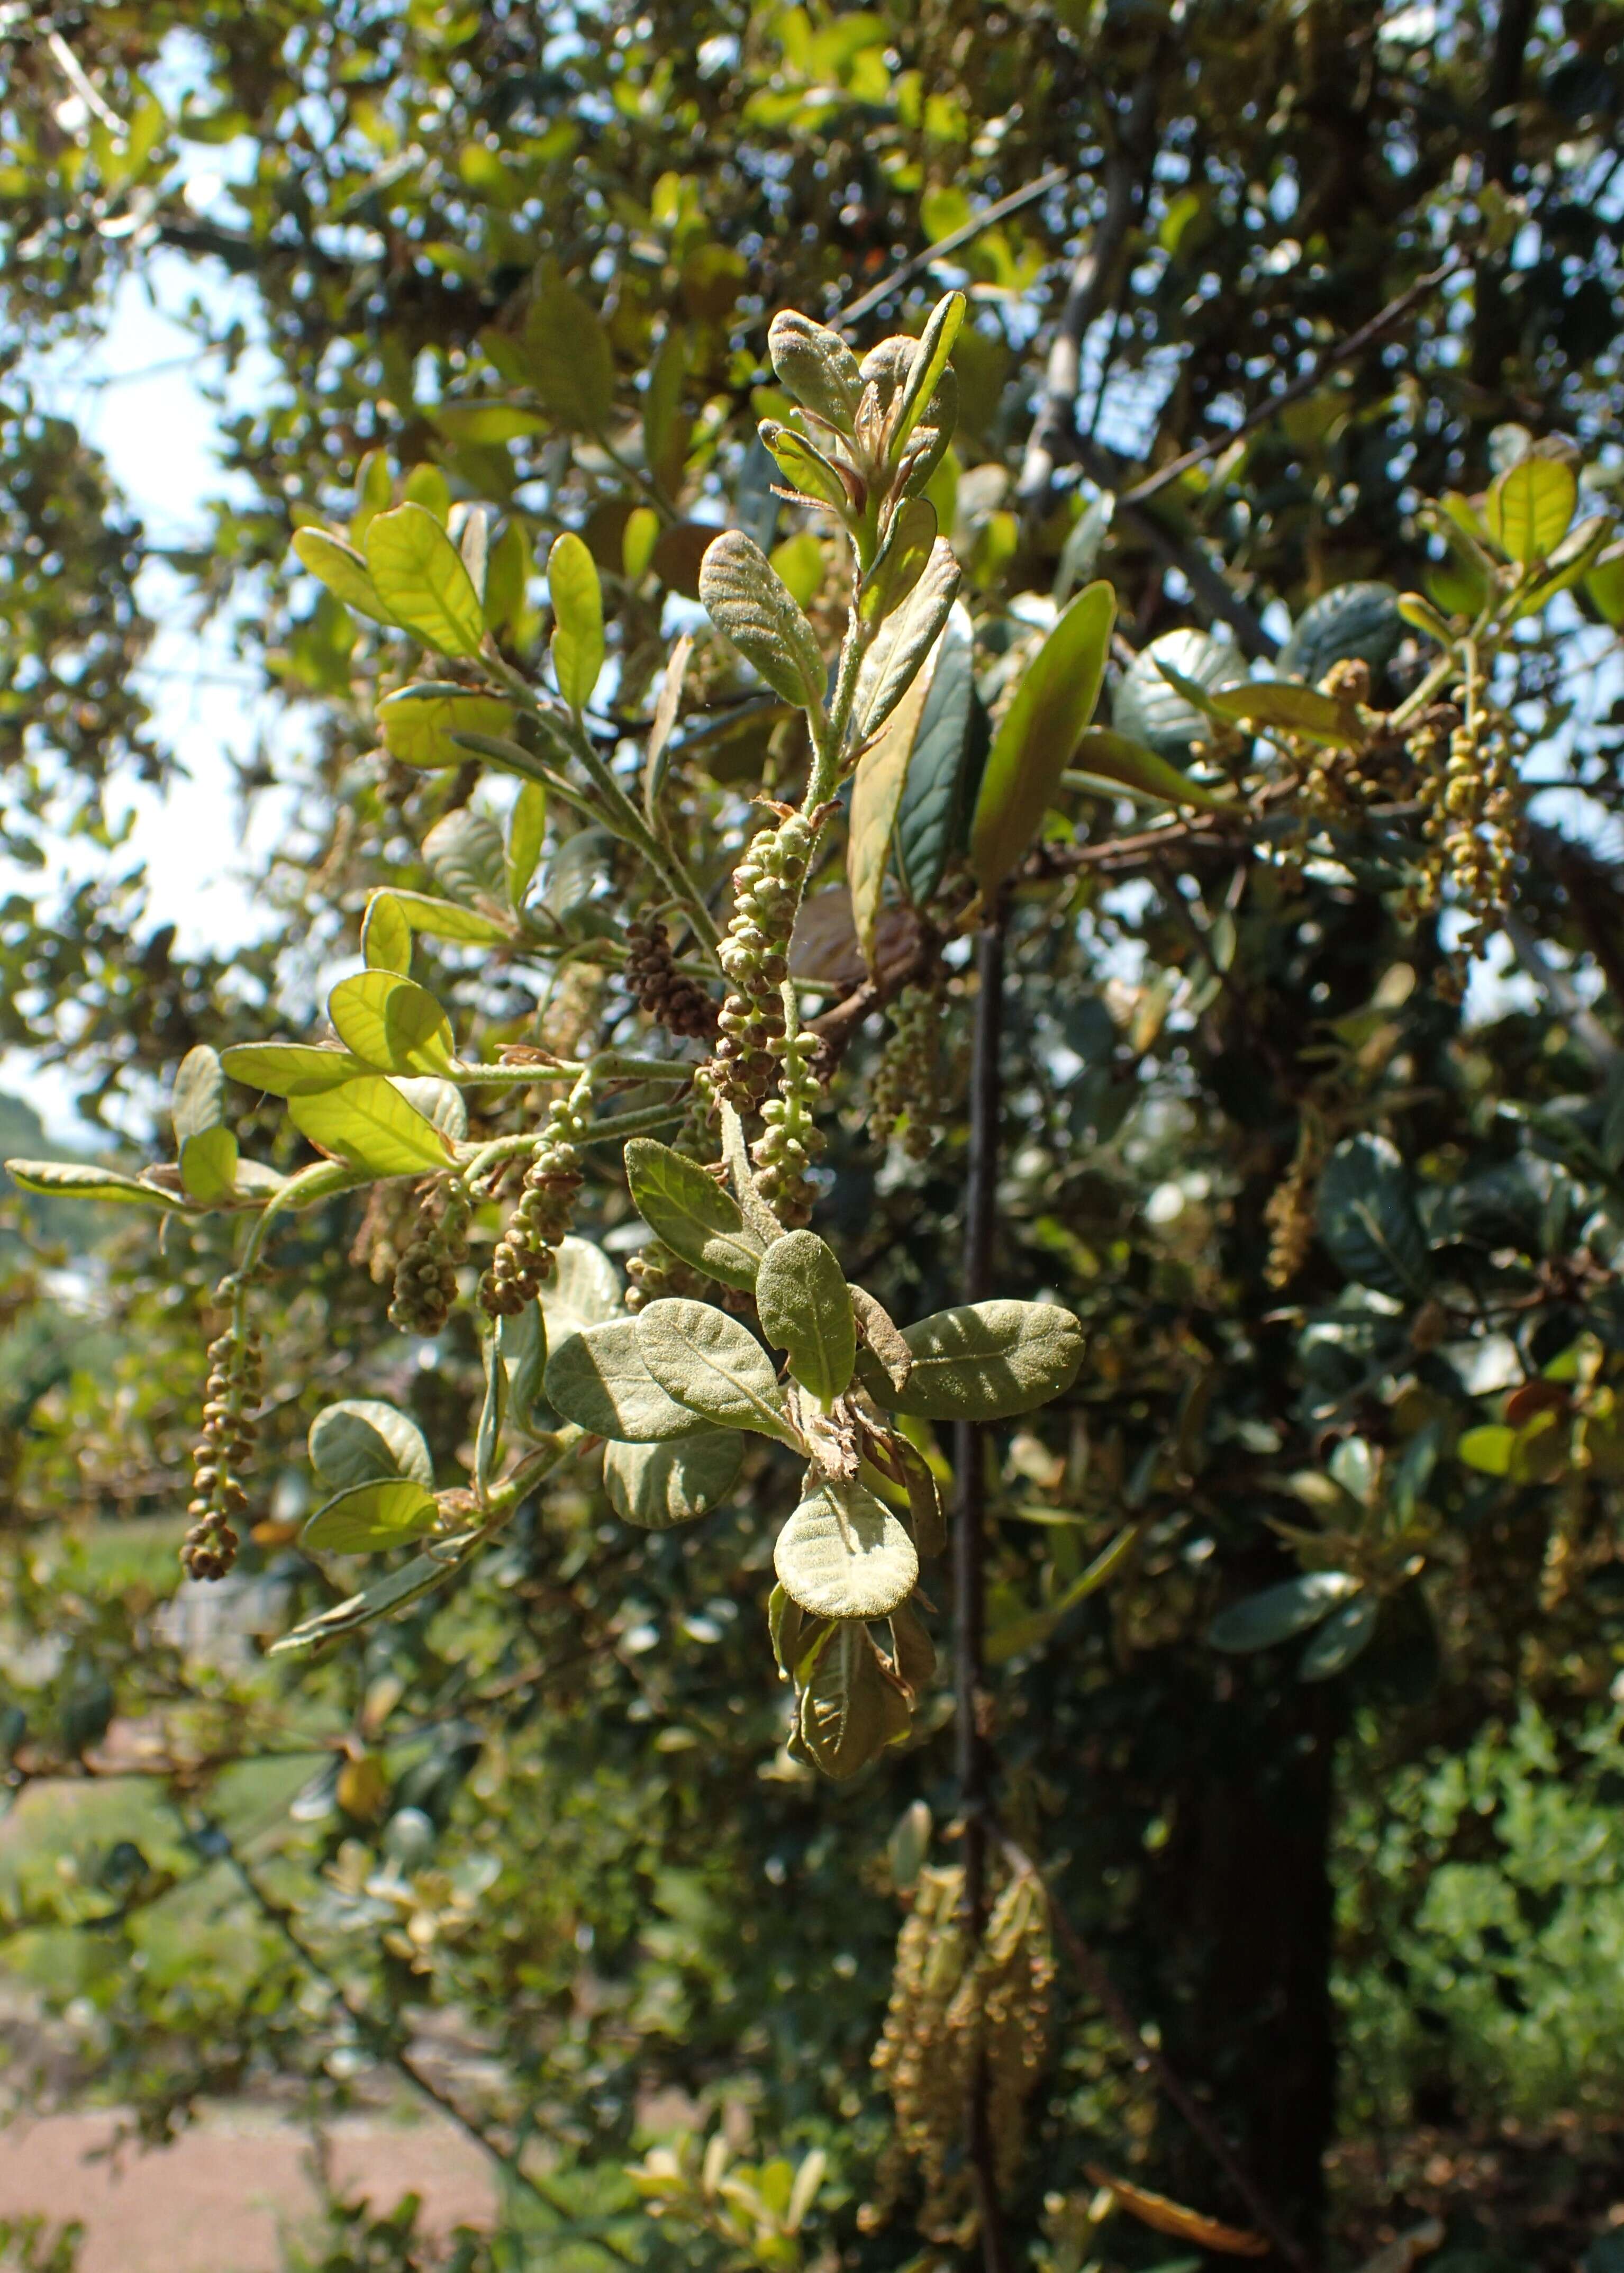 Image of Quercus aquifolioides Rehder & E. H. Wilson